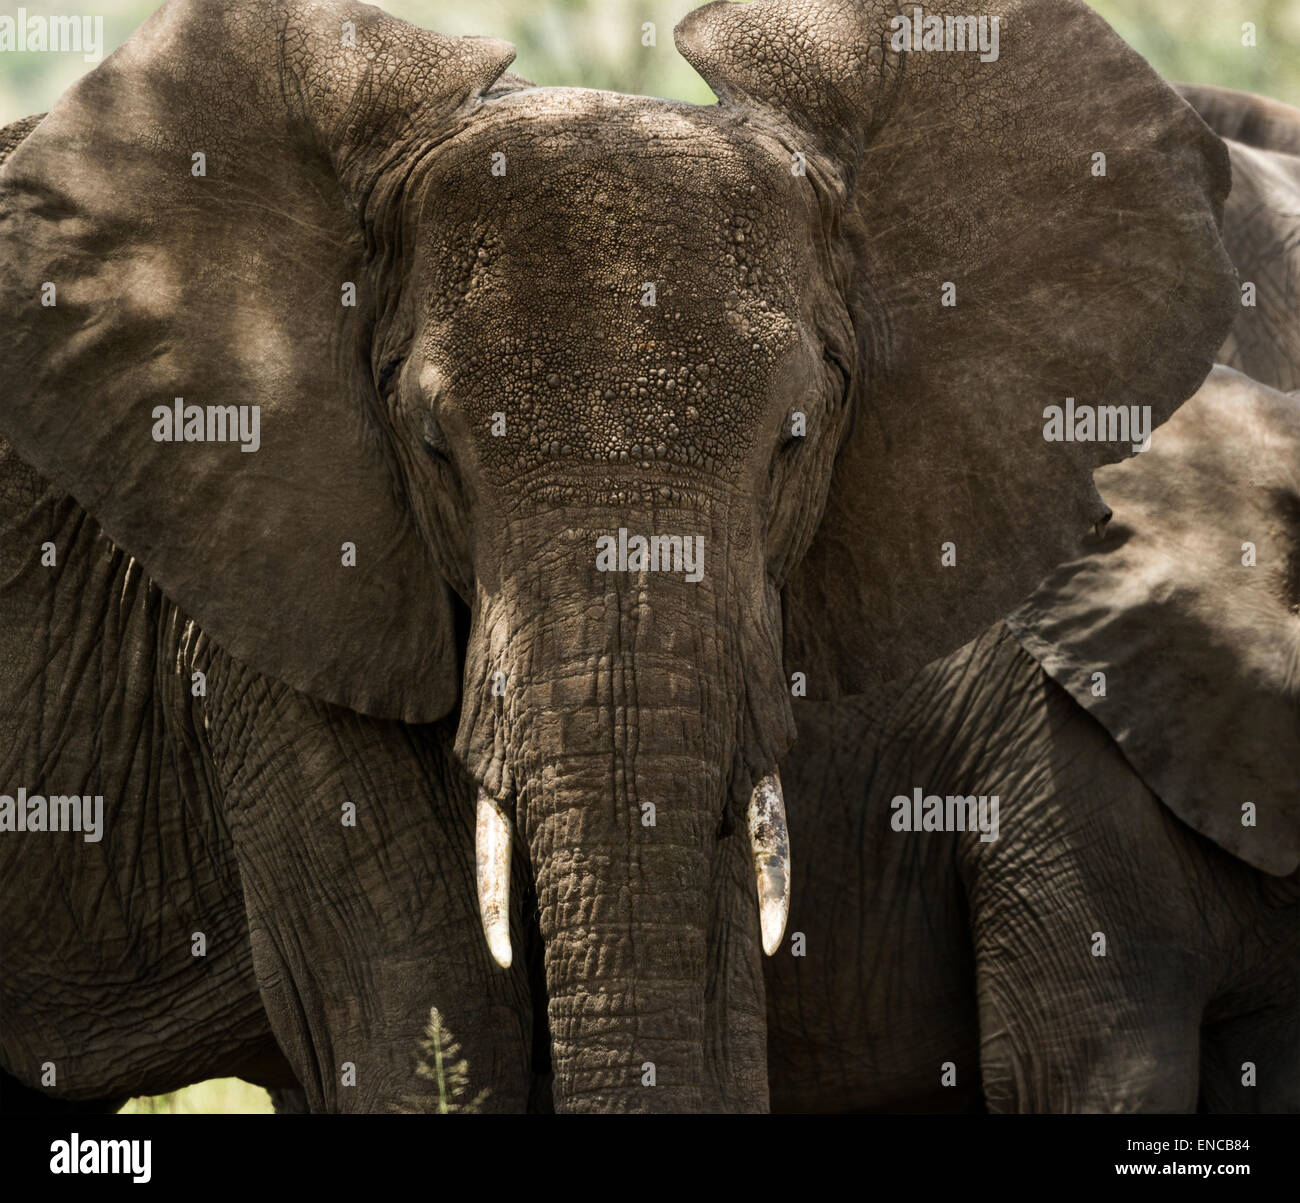 Nahaufnahme von einem Elefanten, Serengeti, Tansania, Afrika Stockfoto